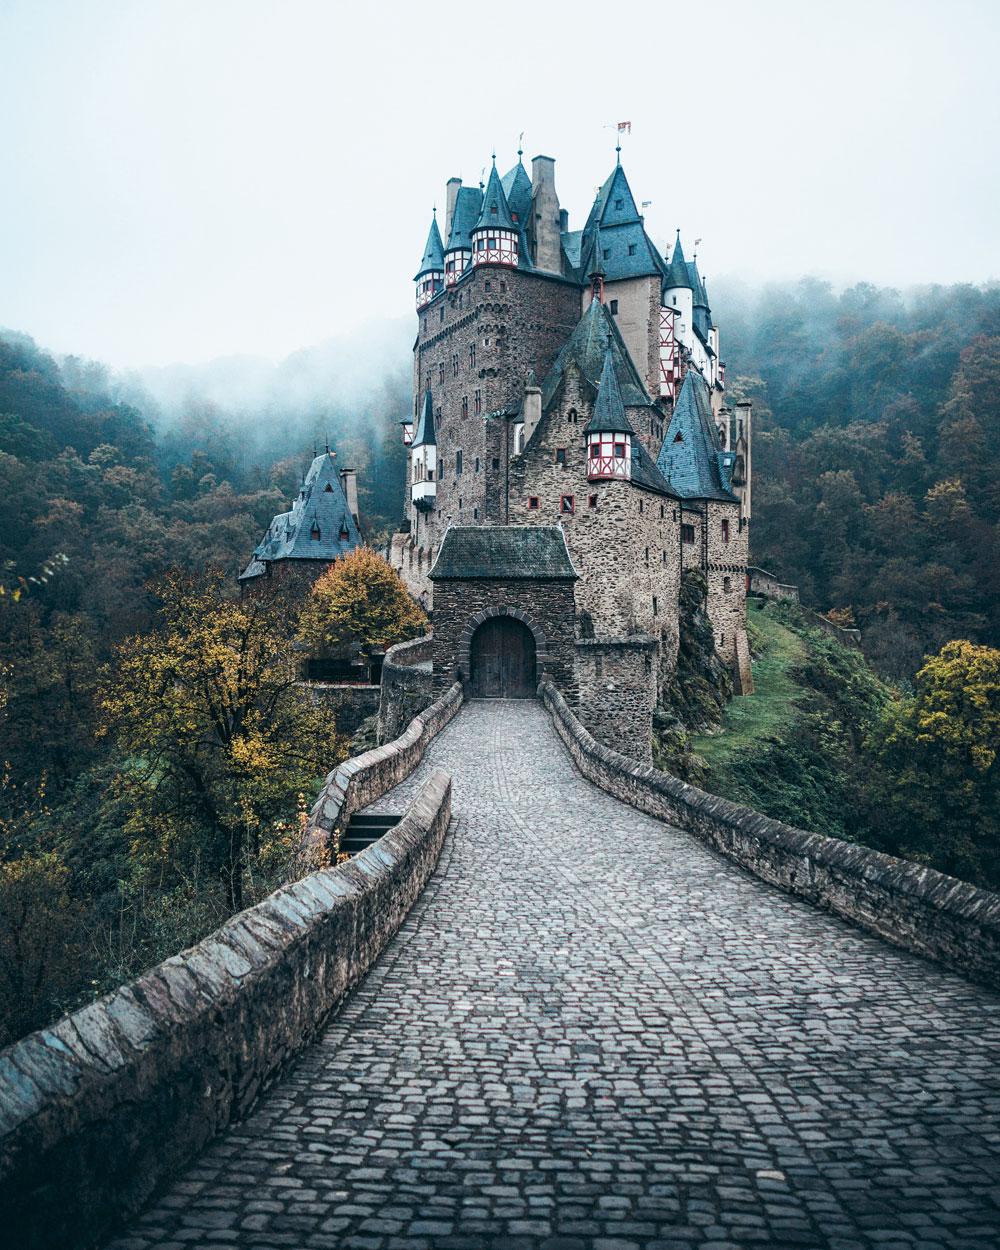 14.027 likes kreeg Michiel Pieters onlangs voor zijn foto van de middeleeuwse Burg Eltz, in Duitsland.